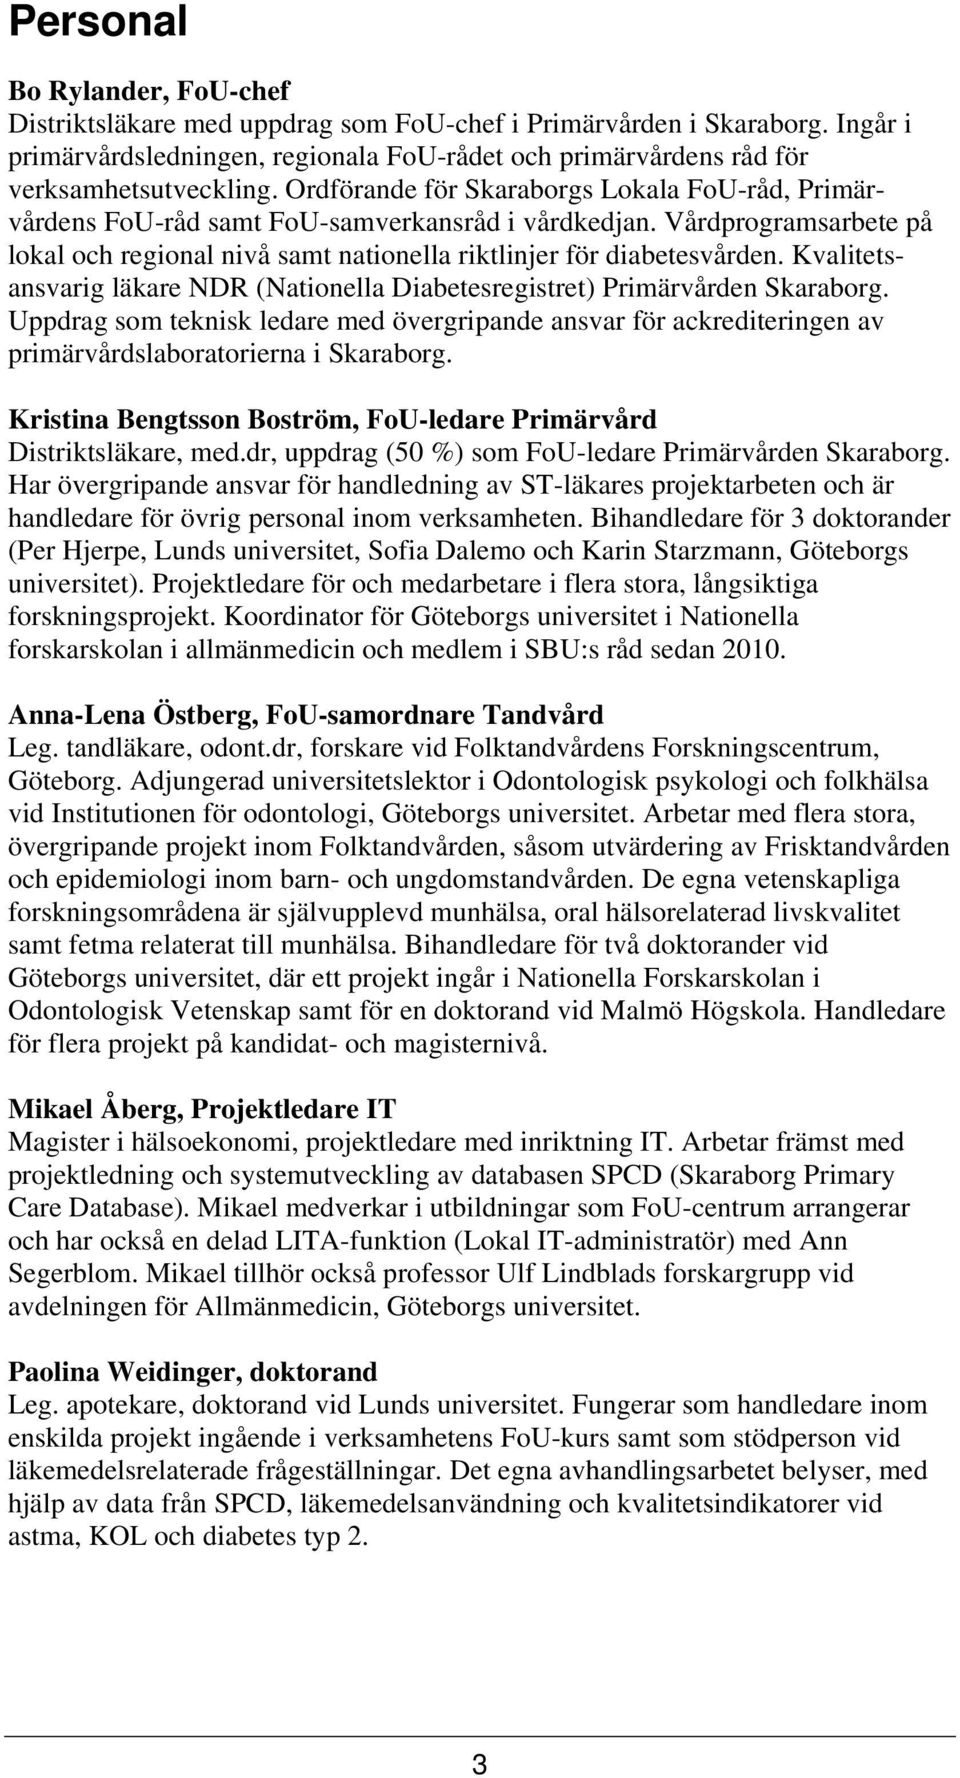 Kvalitetsansvarig läkare NDR (Nationella Diabetesregistret) Primärvården Skaraborg. Uppdrag som teknisk ledare med övergripande ansvar för ackrediteringen av primärvårdslaboratorierna i Skaraborg.